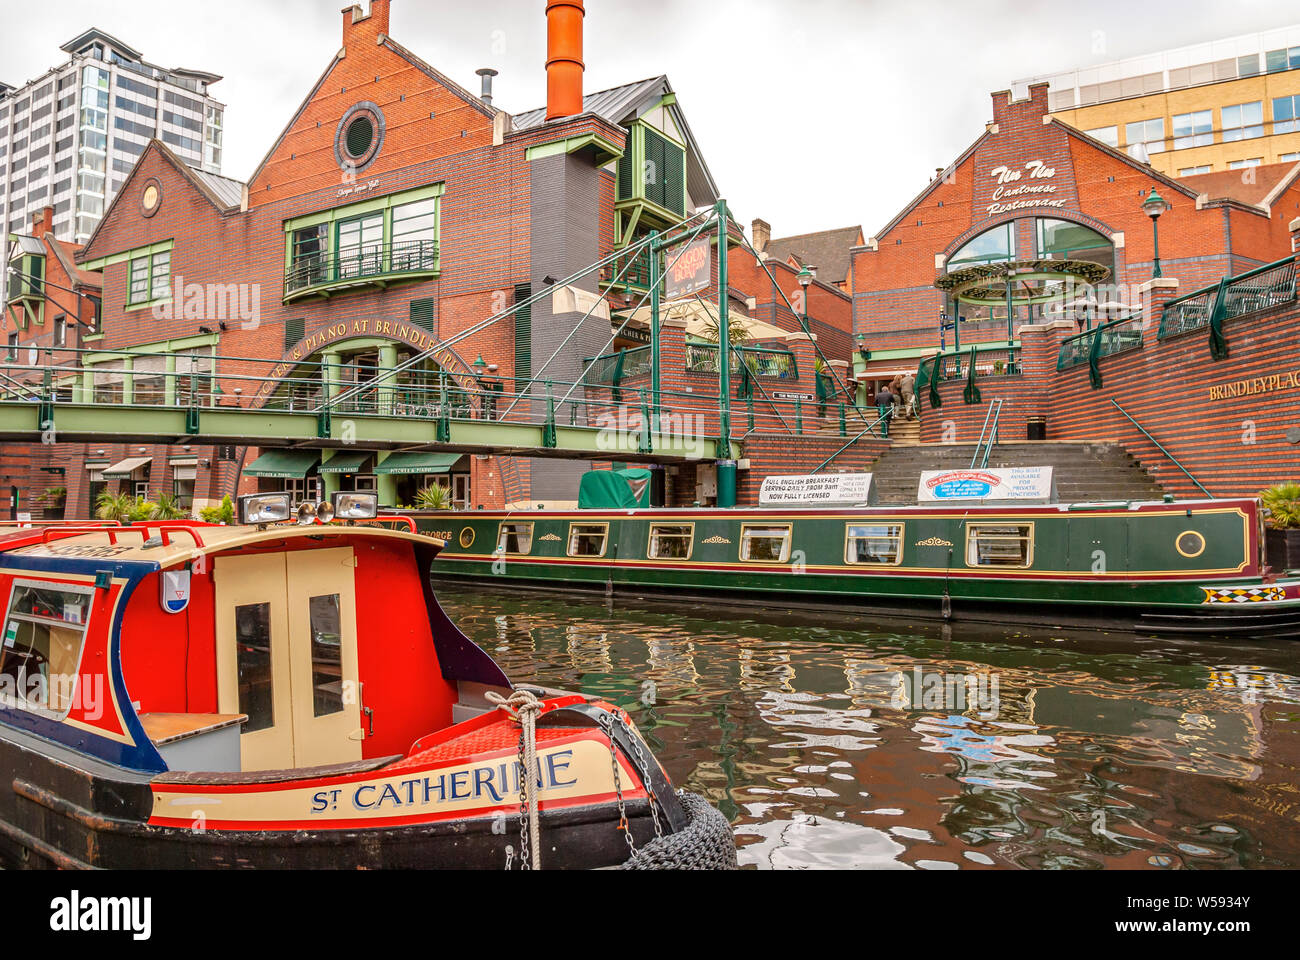 Bateaux étroits à Gas Street Basin, un bassin de canal dans le centre de Birmingham, Angleterre Banque D'Images